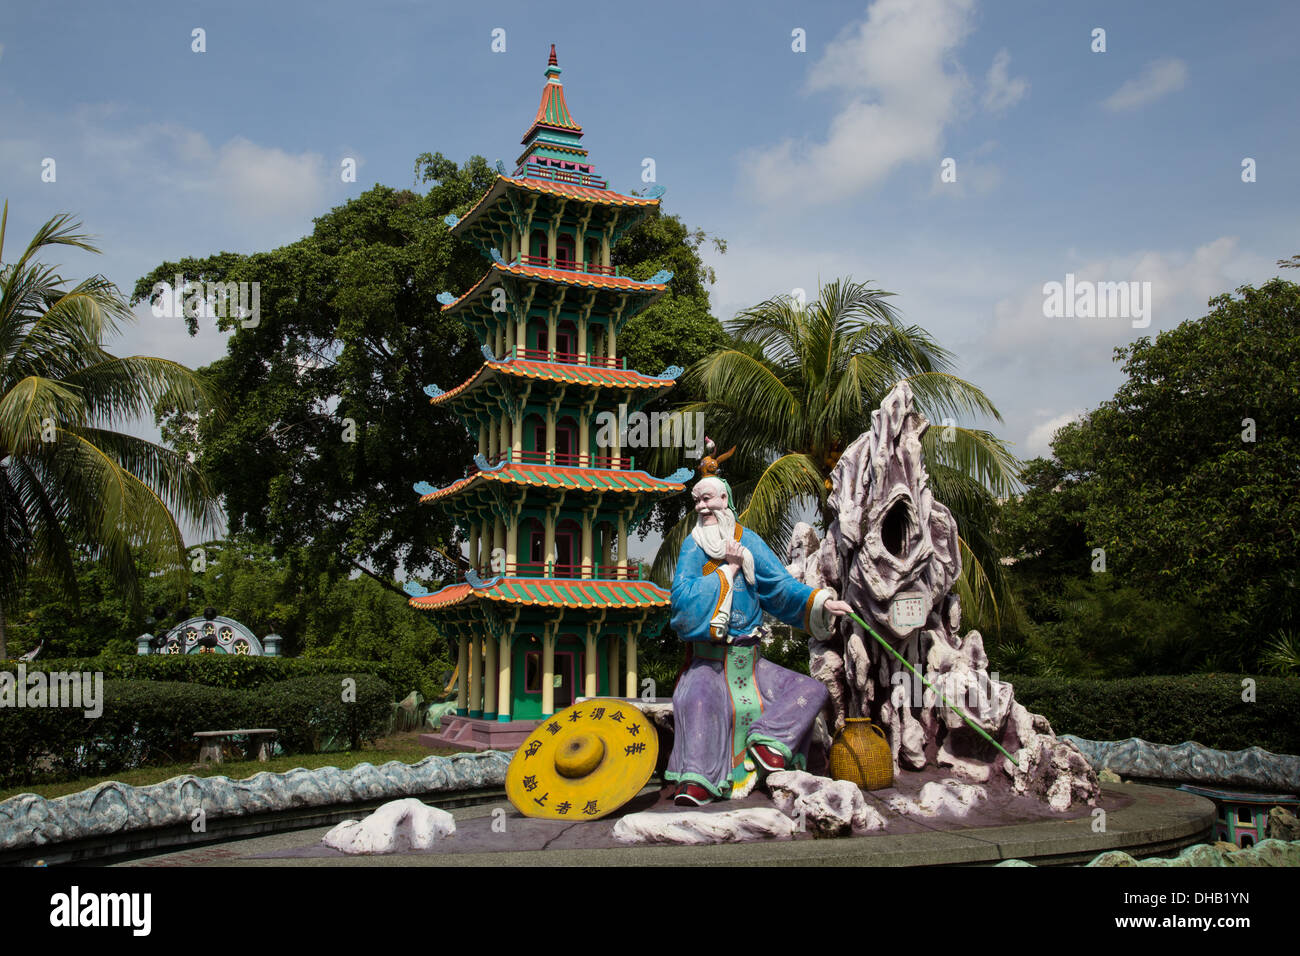 Haw Par Villa ist ein One of a Kind-Themenpark in Singapur Szenen aus der chinesischen Mythologie, konfuzianischen Geschichten, Folklore und Legenden. Stockfoto